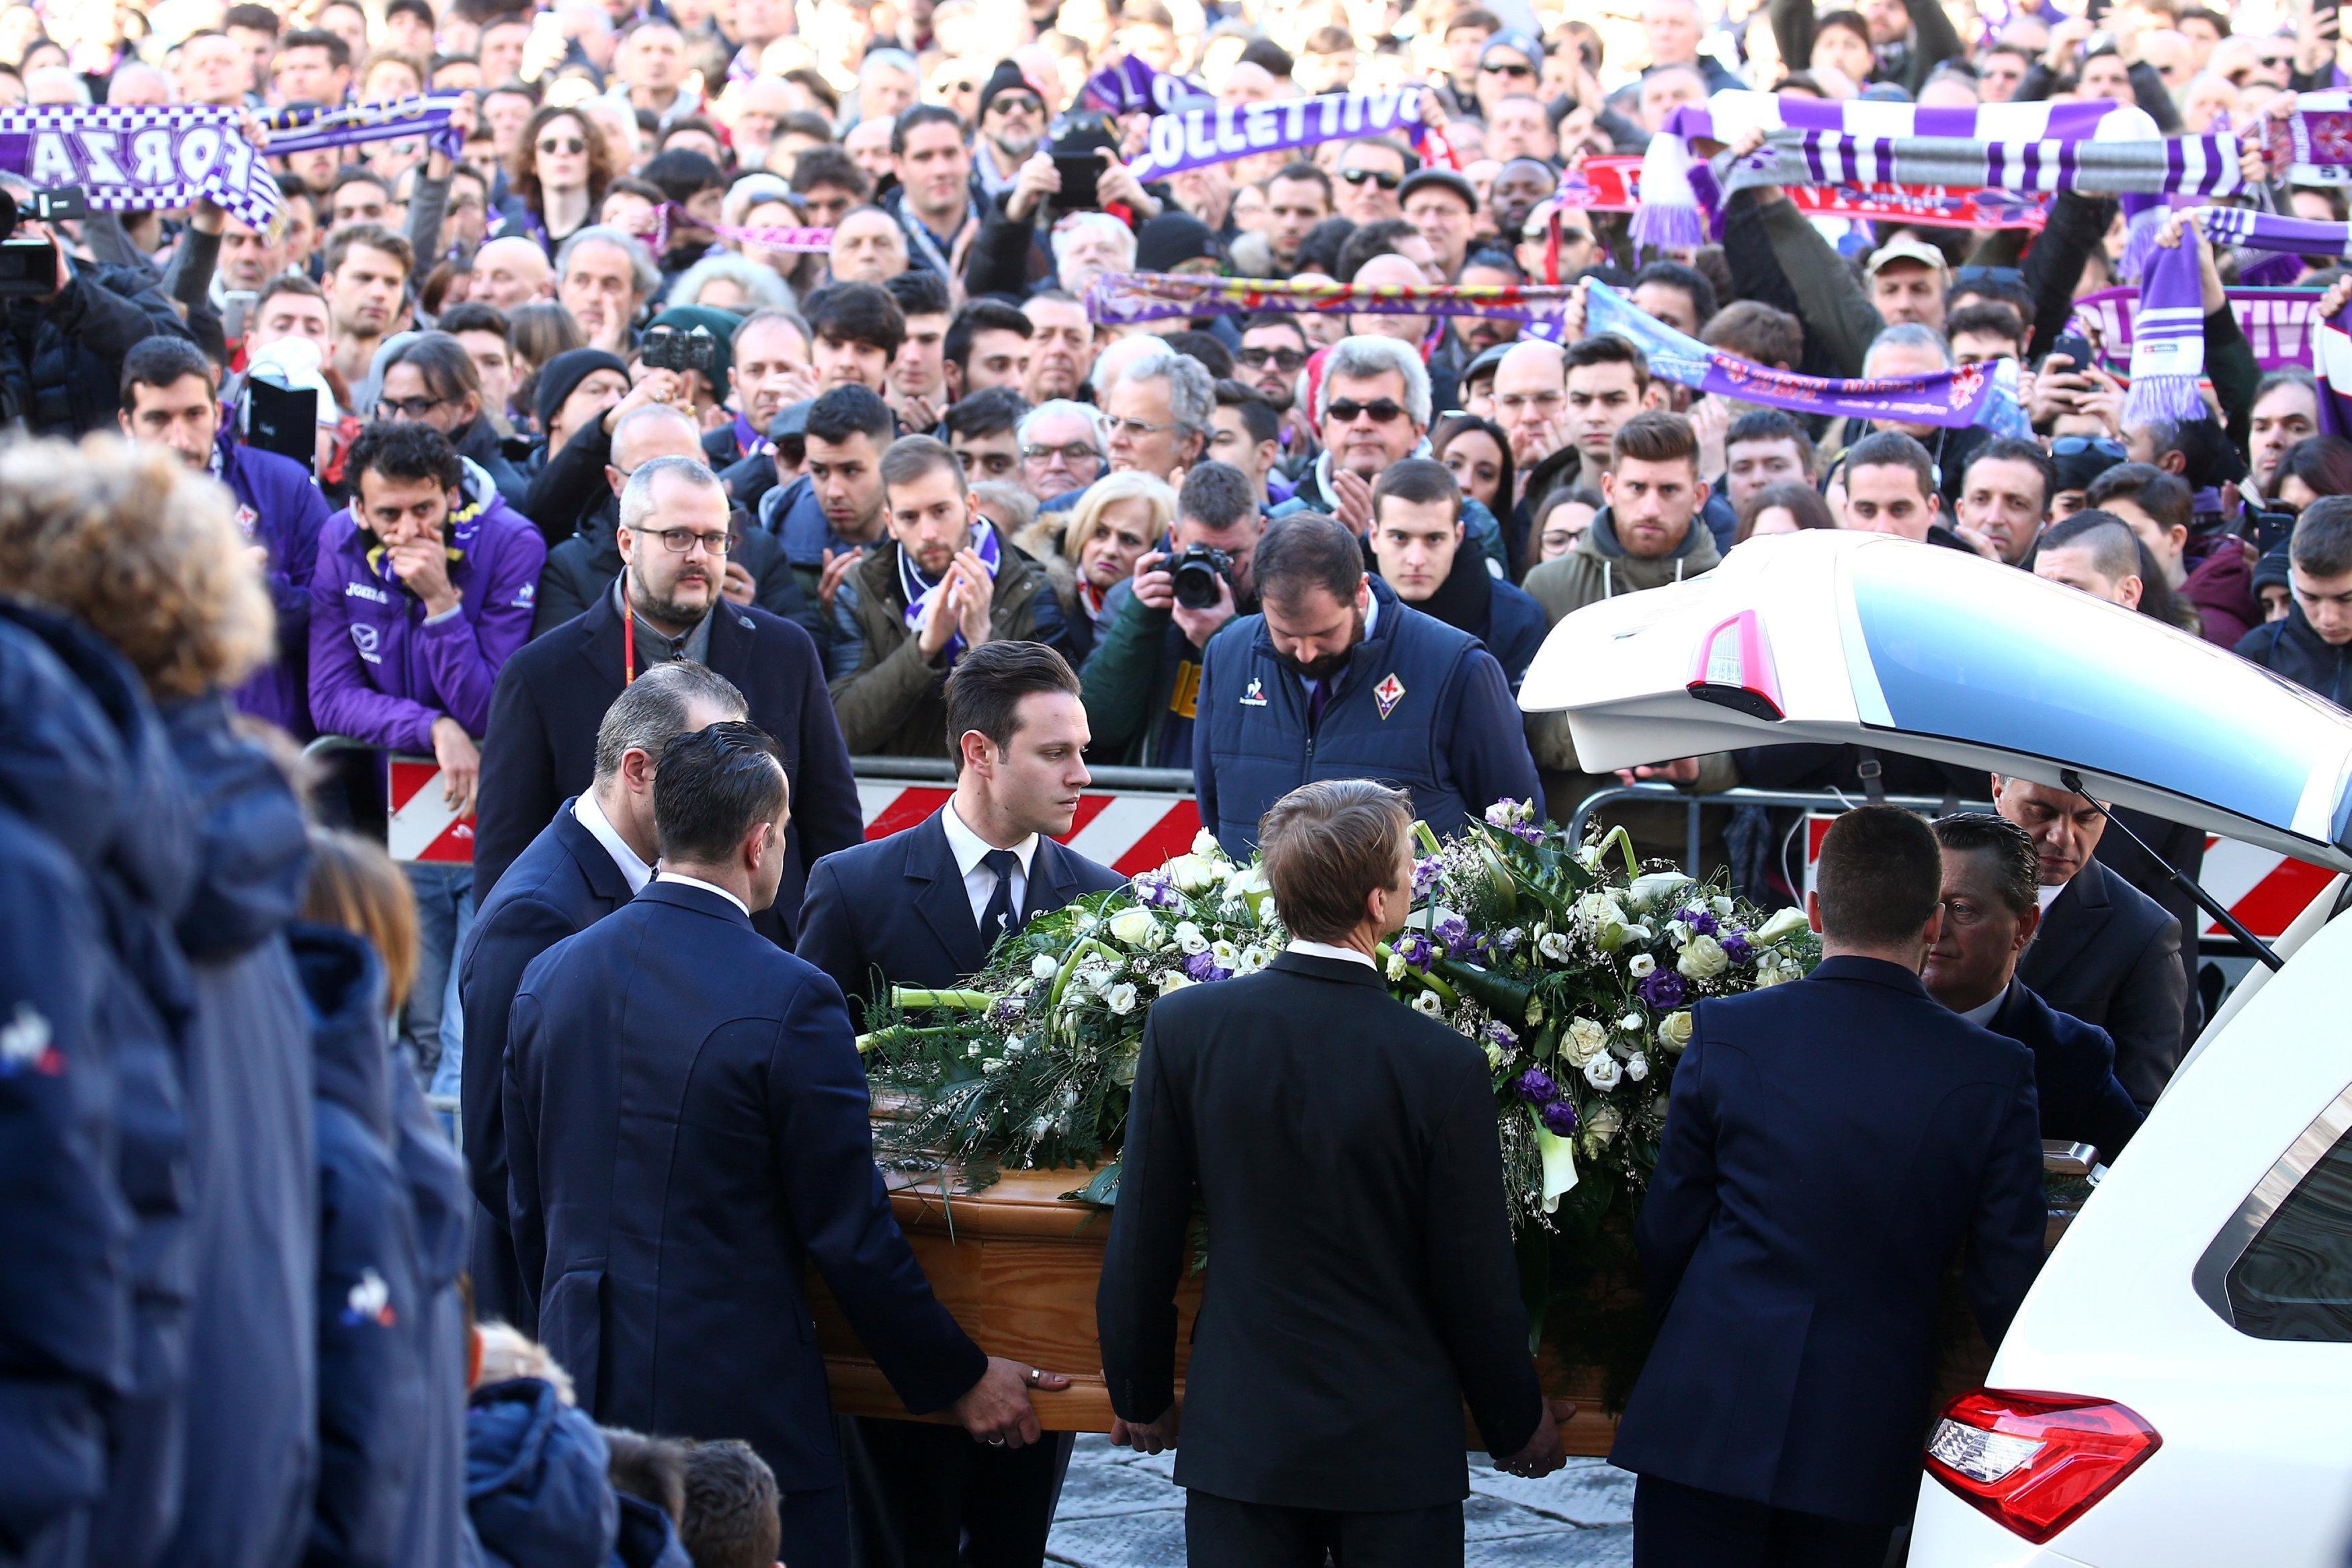 Davide Astorinin cenazesinde gözyaşları sel oldu